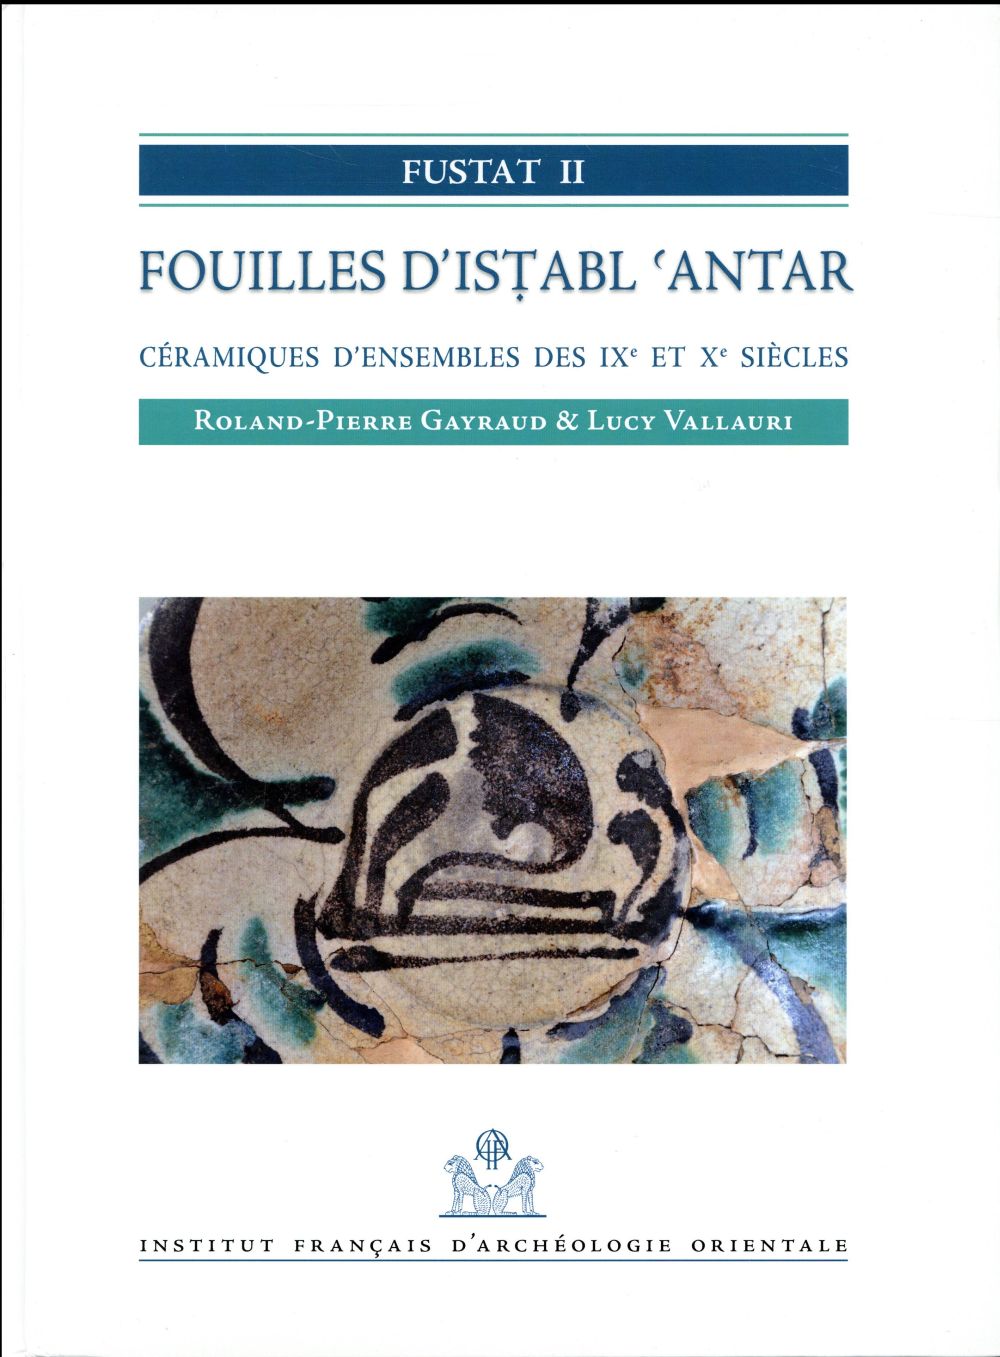 FUSTAT II. FOUILLES D'ISTABL'ANTAR